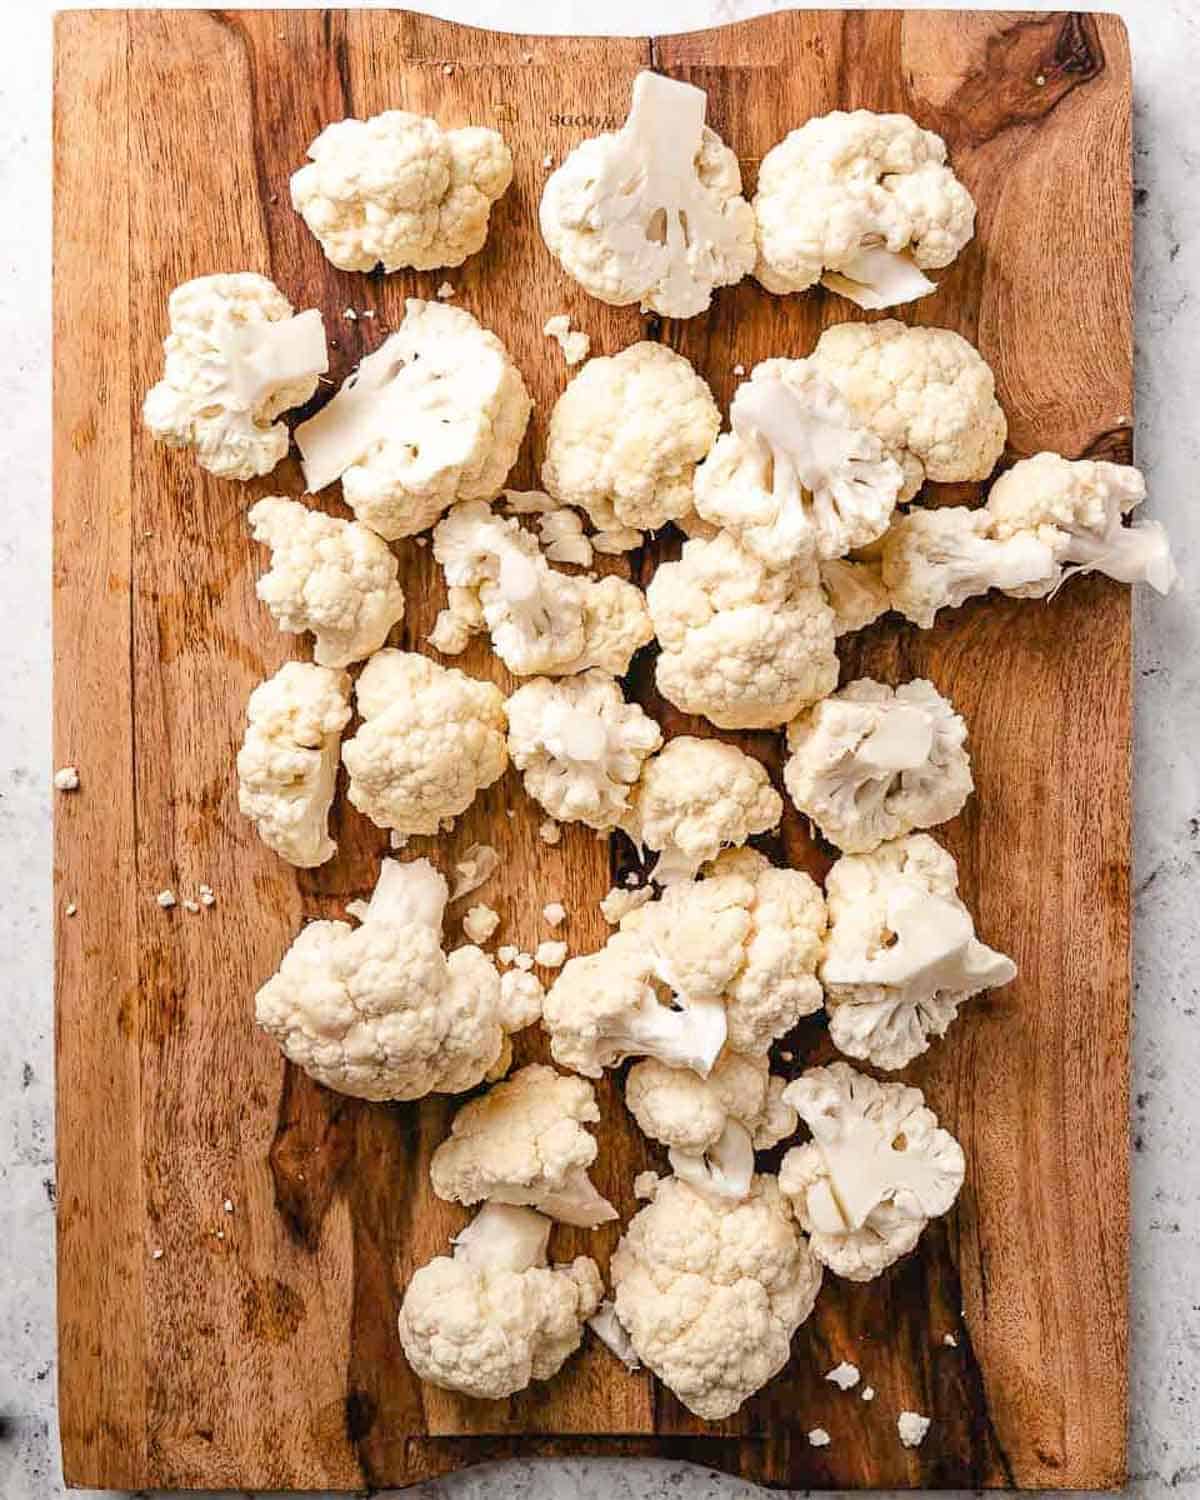 Cauliflower on cutting board.